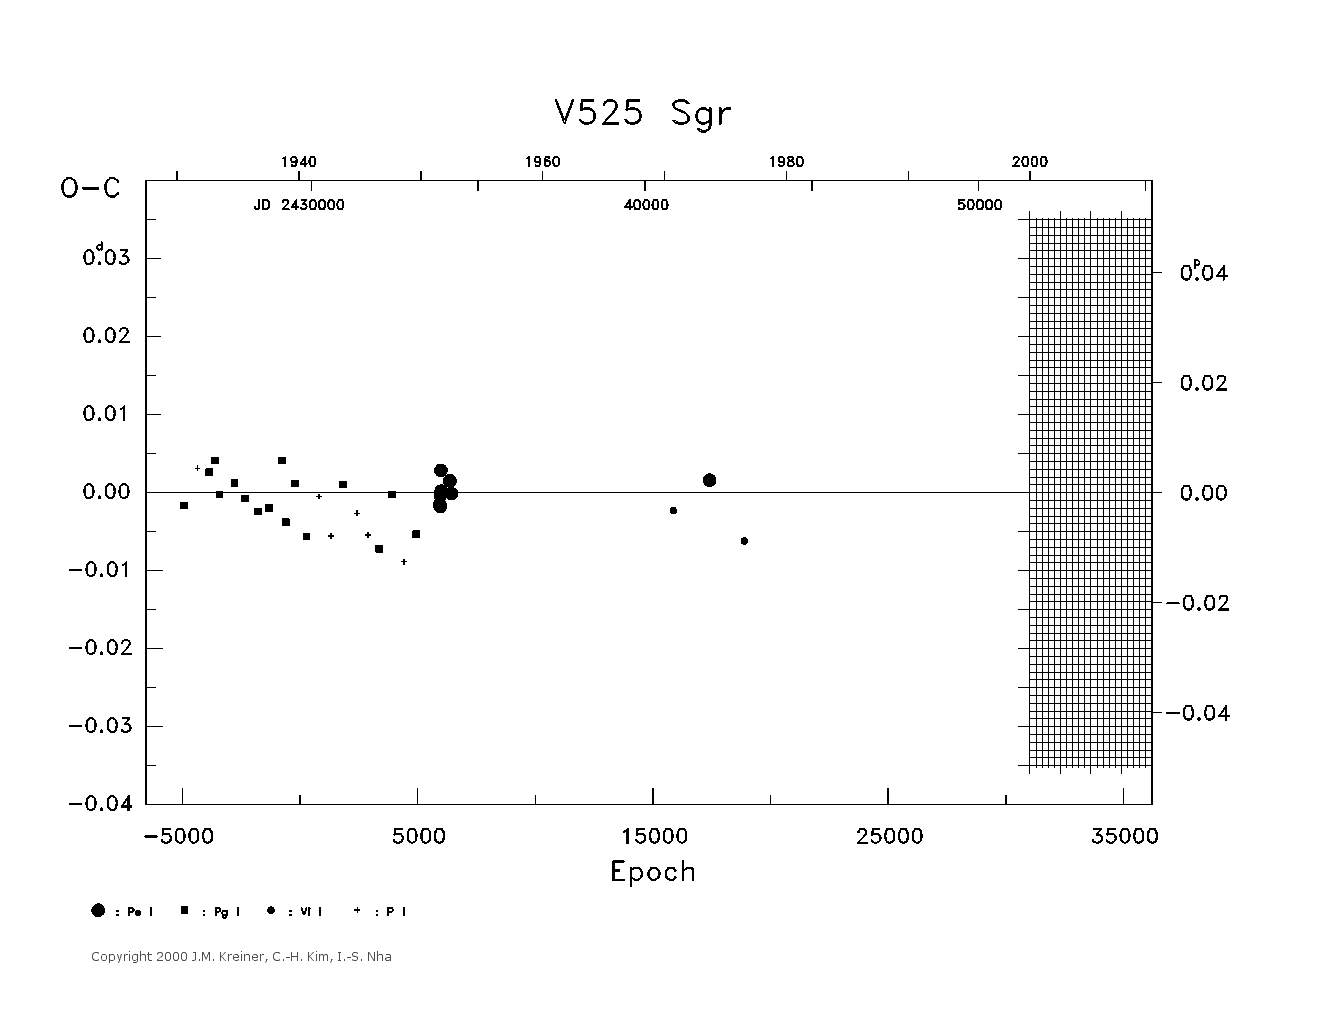 [IMAGE: large V525 SGR O-C diagram]